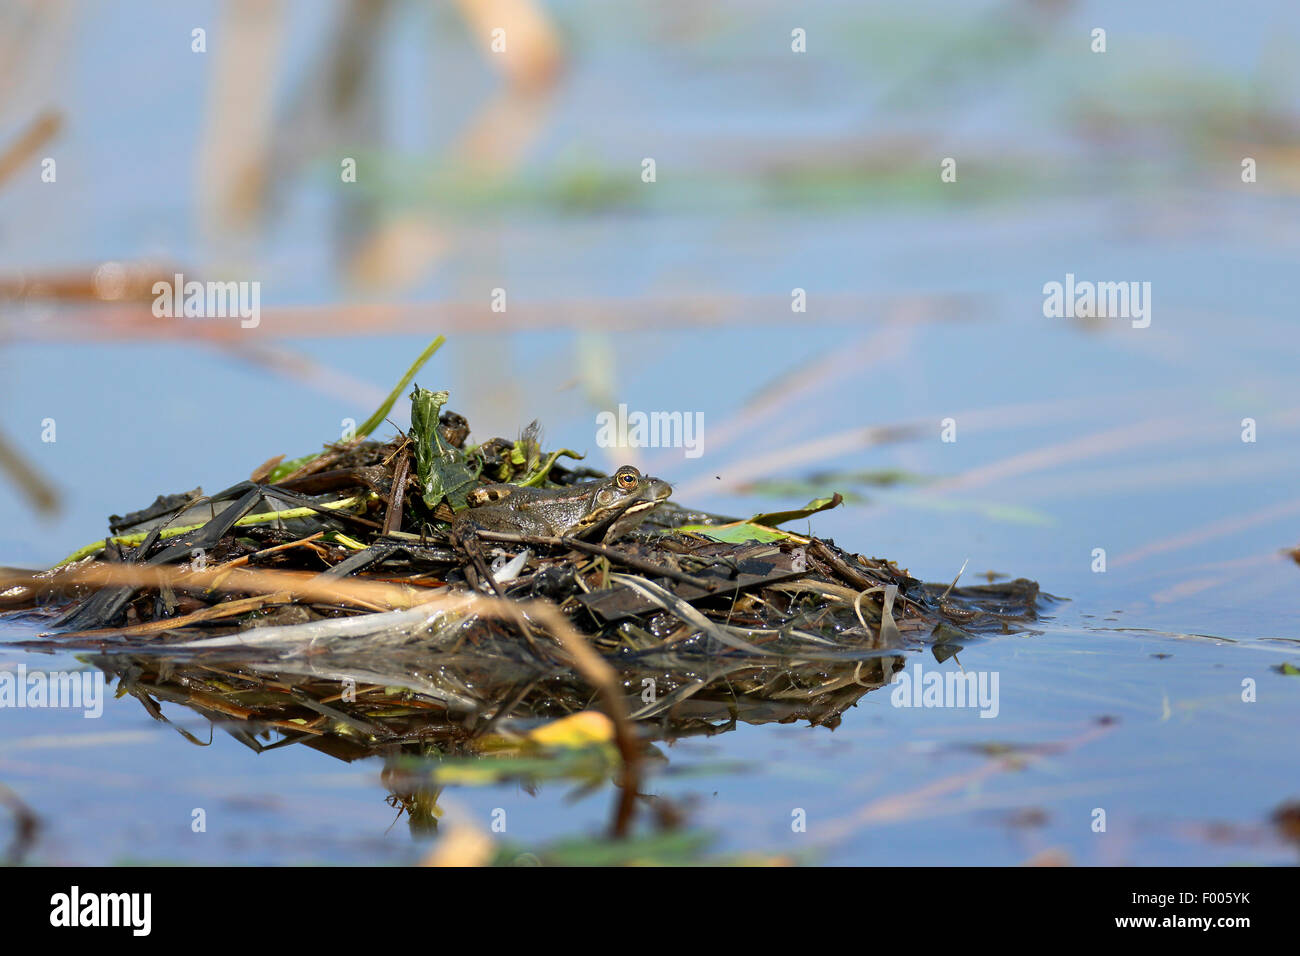 Seefrosch, Seefrosch (Rana Ridibunda, außer Ridibundus), sitzt auf dem Nest von einem Dabchick, Griechenland, See Kerkini Stockfoto